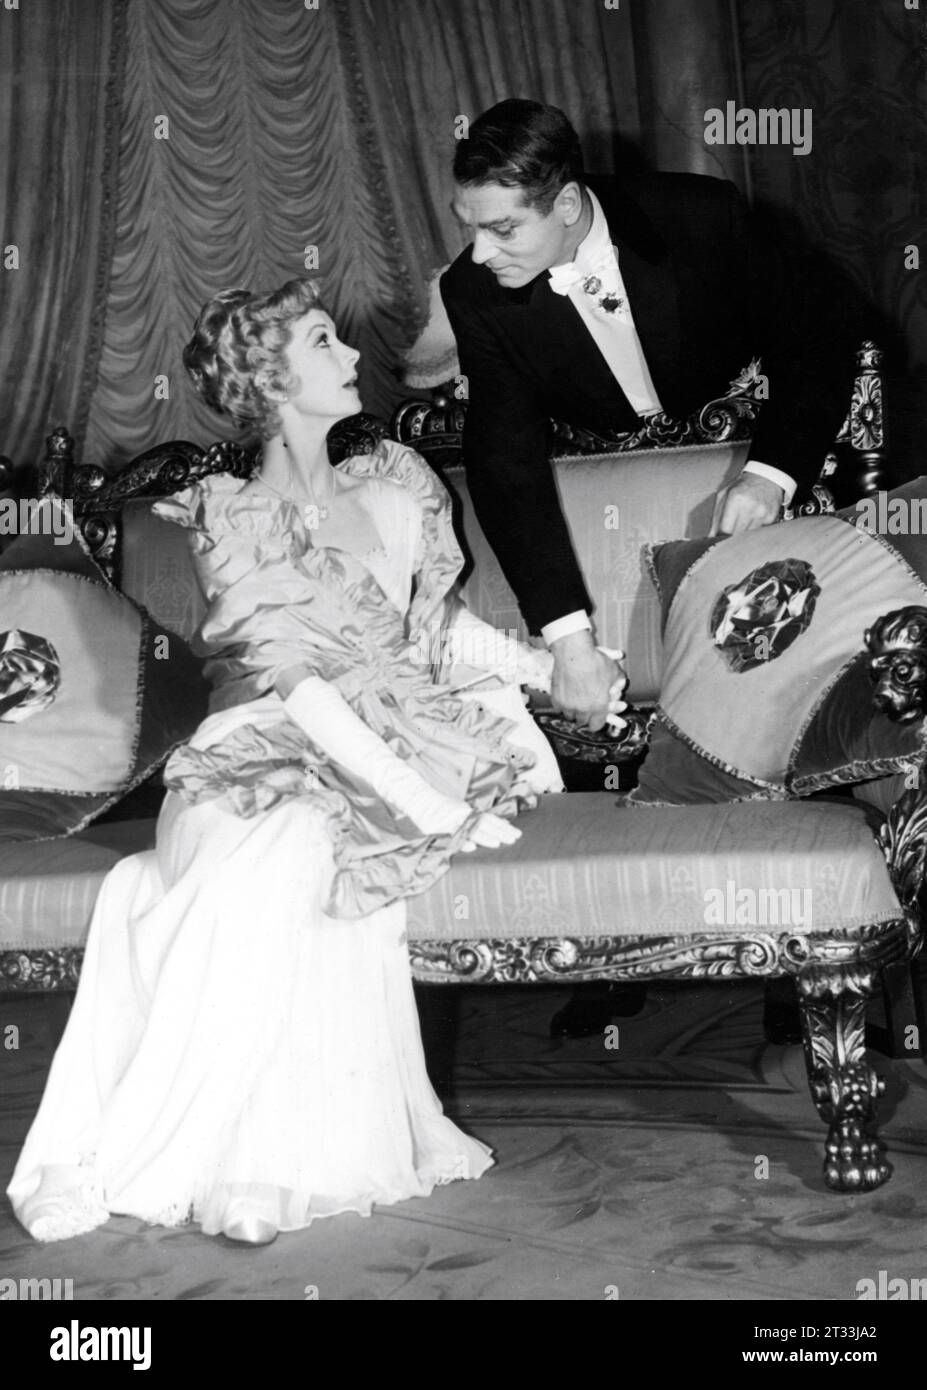 VIVIEN LEIGH et LAURENCE OLIVIER sur scène dans THE SLEEPING PRINCE la réalisatrice LAURENCE OLIVIER joue les décors et costumes de TERENCE RATTIGAN Roger Furse à l'Opéra de Manchester le premier soir du 28 septembre 1953 Banque D'Images